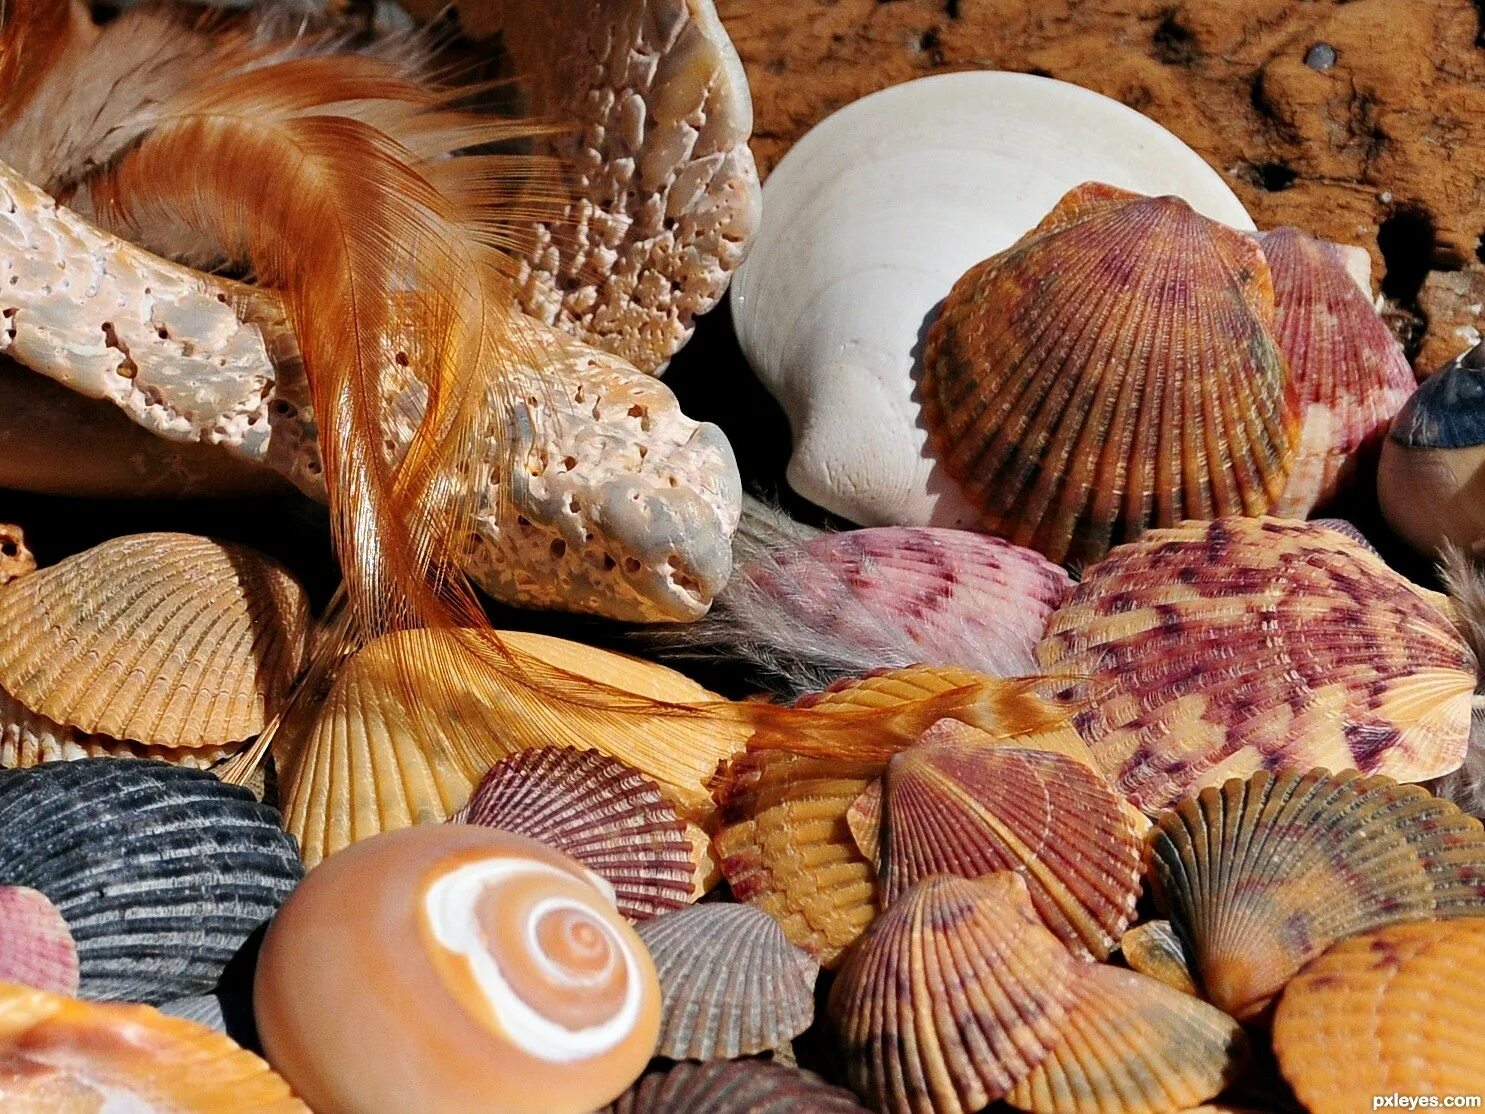 Sells seashells. Seashells on the Seashore. Seashells by the Sea Shore. Sea Shells on the Seashore. She sells Seashells by the Seashore.